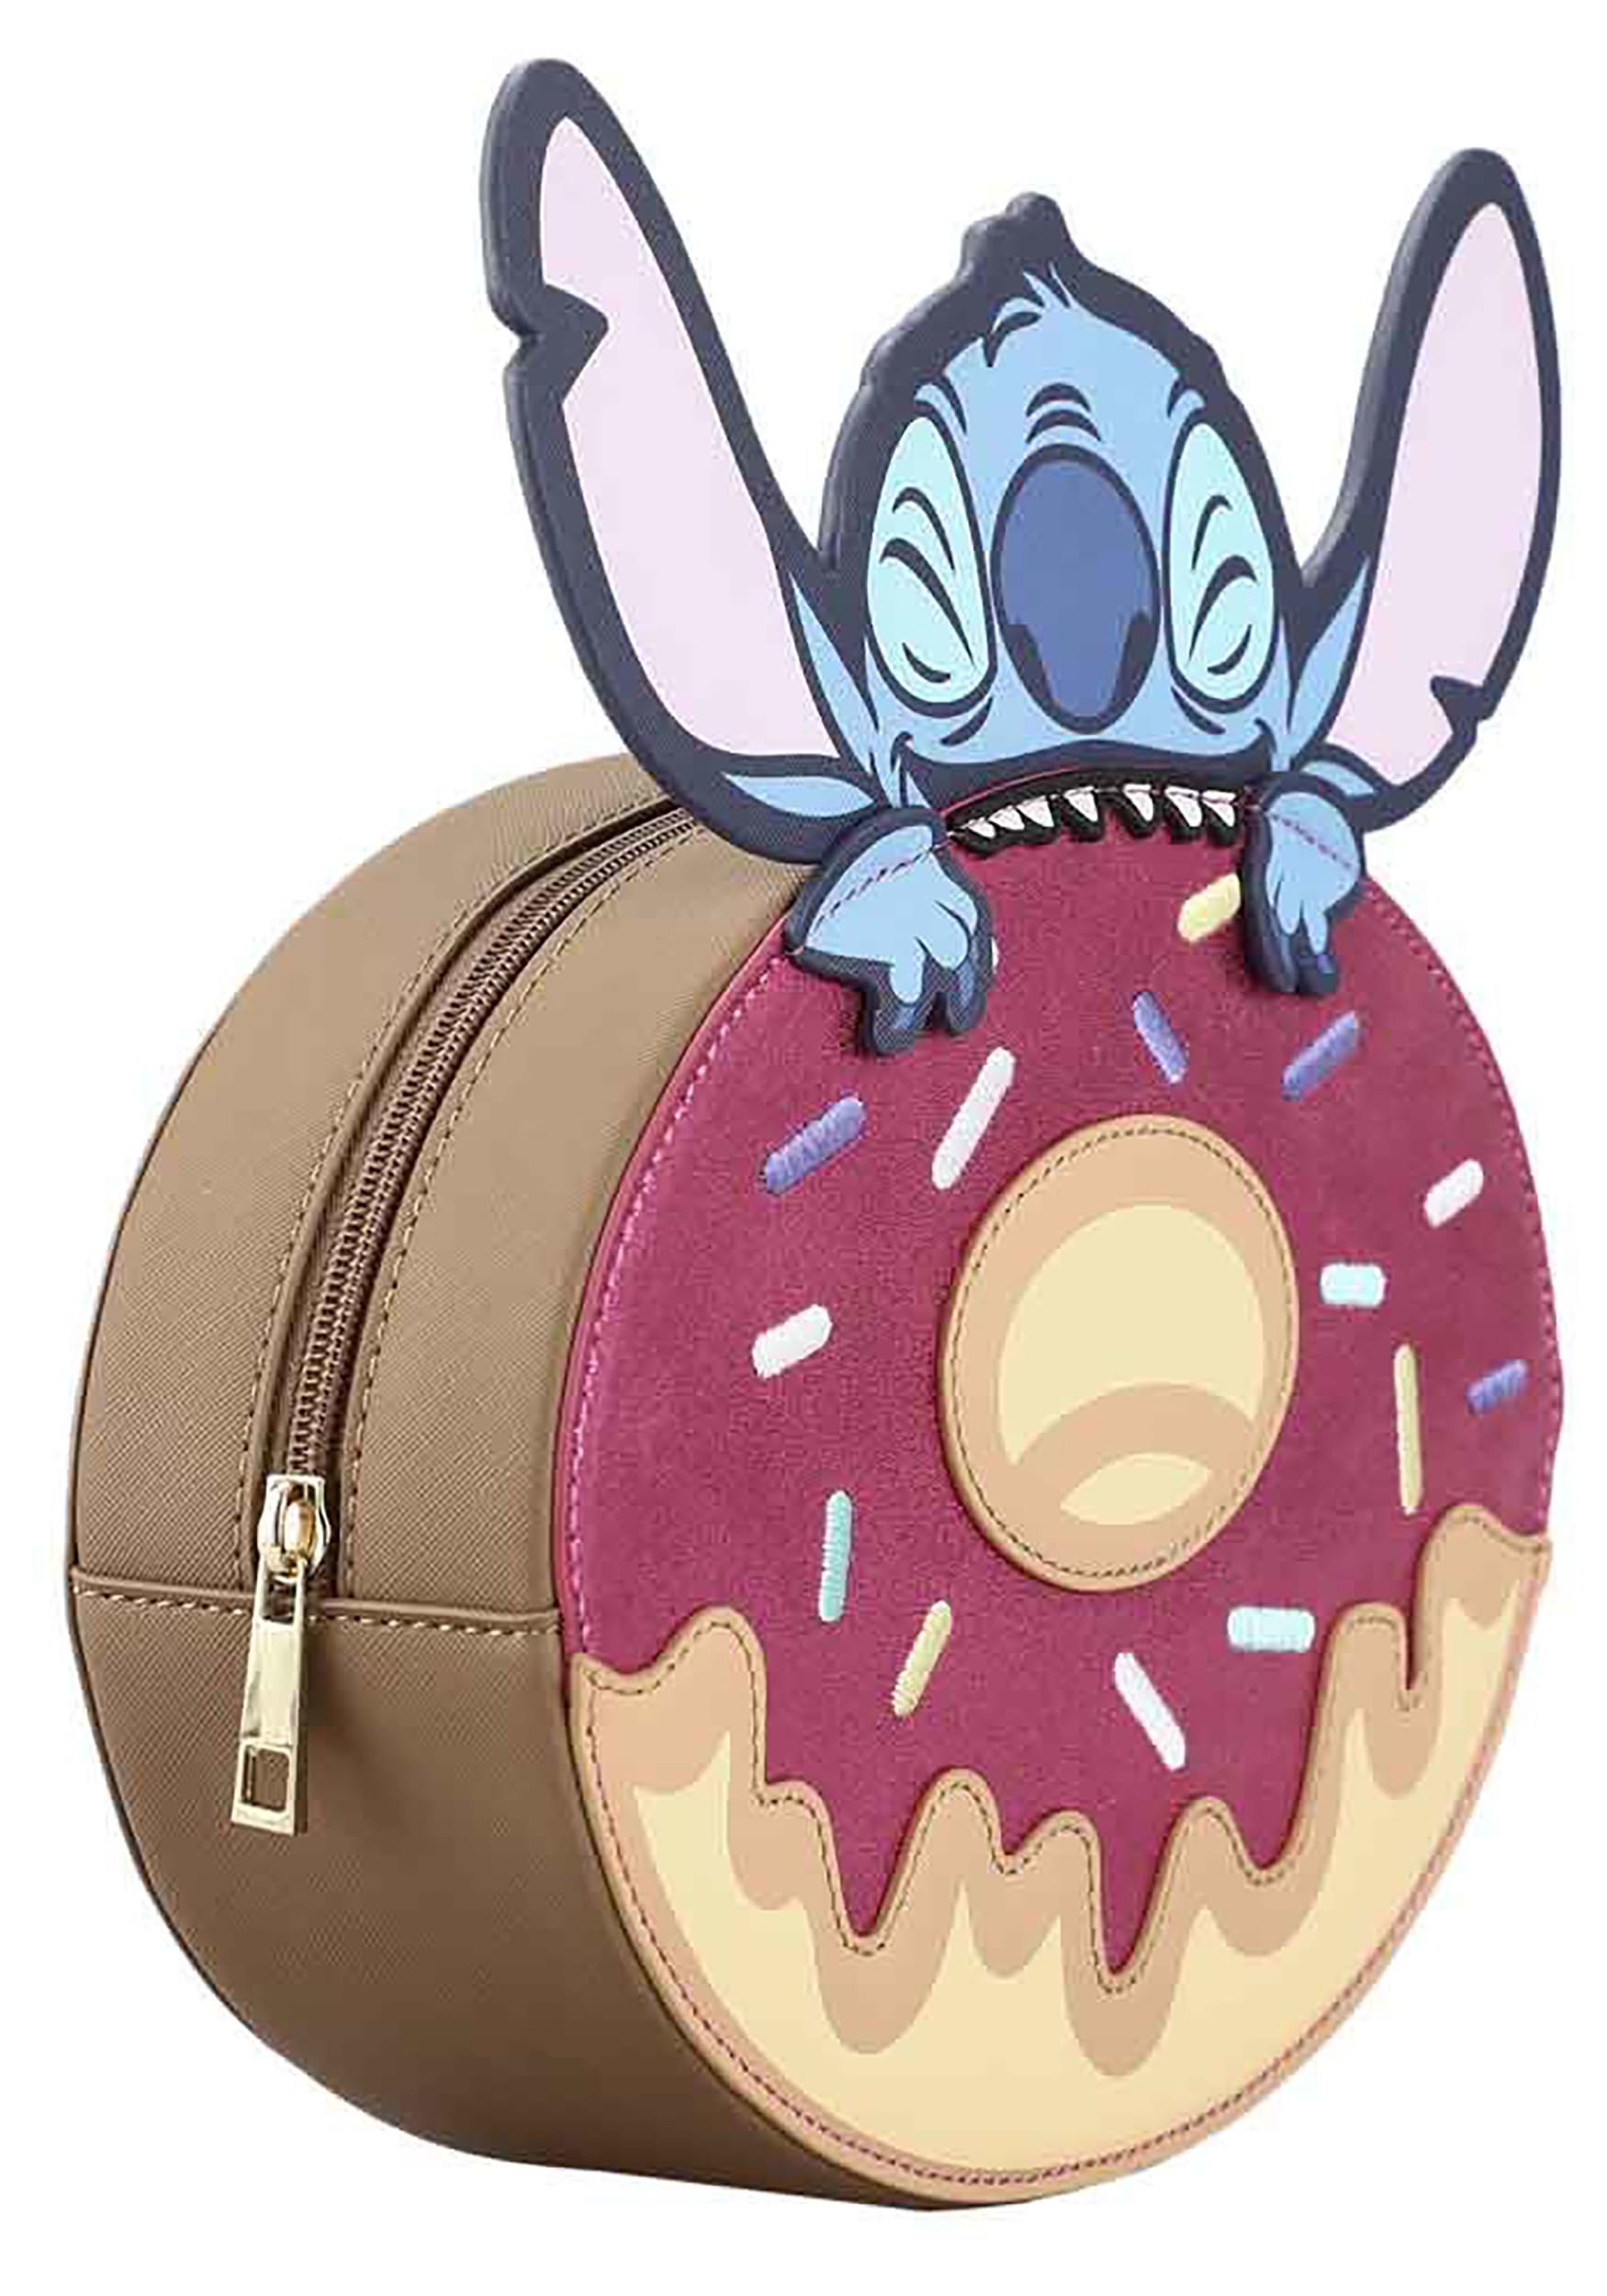  Disney Stitch Make Up Bag - Travel Cosmetics Bag for